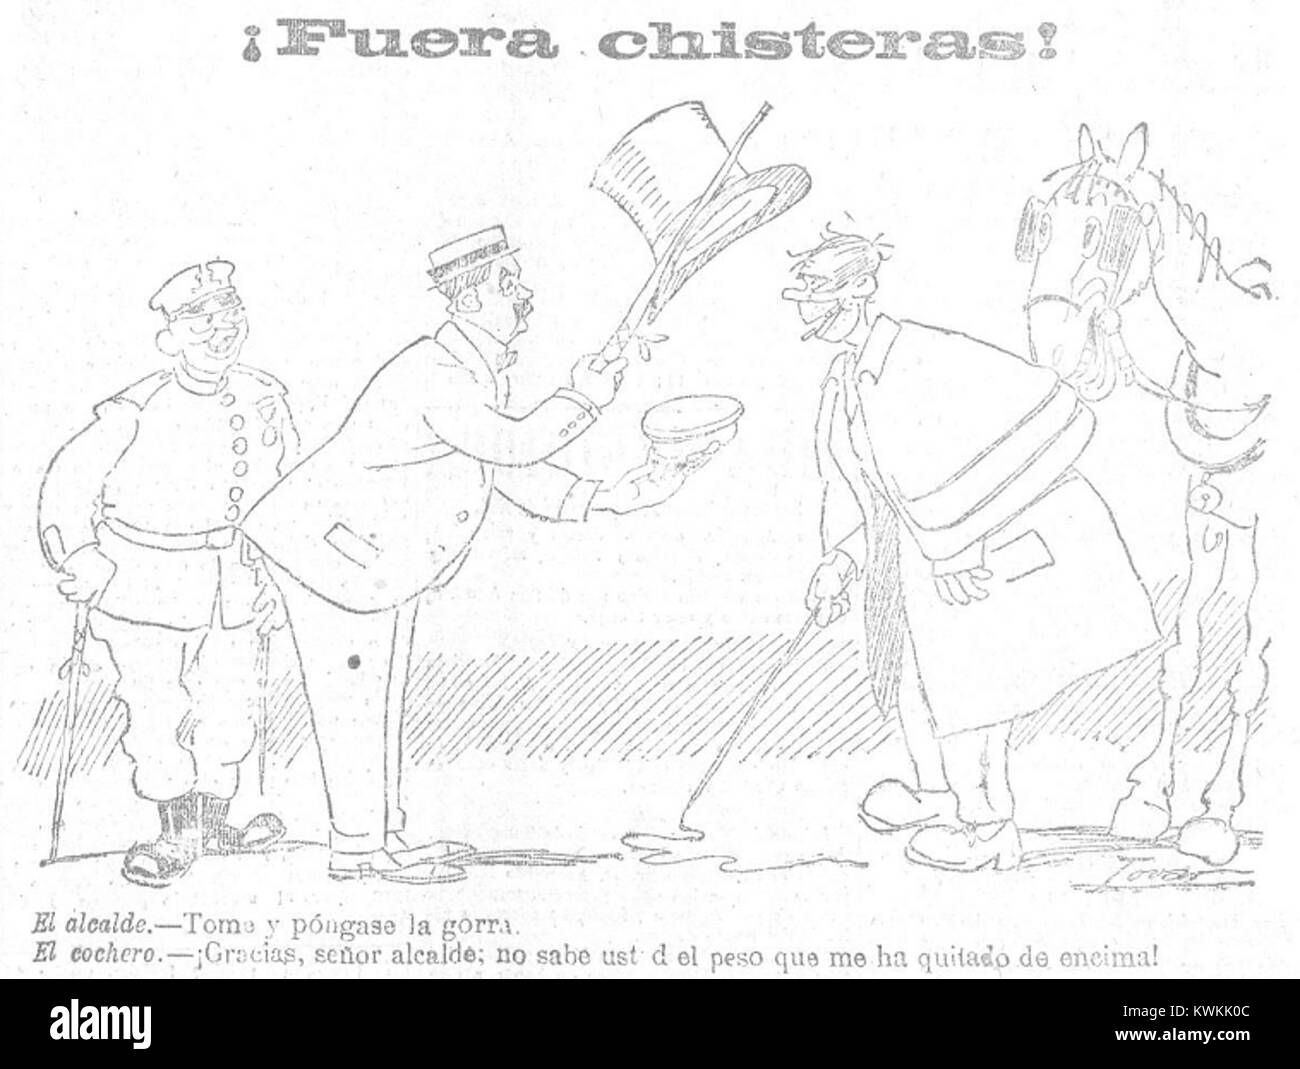 ¡Fuera!, chisteras de Tovar, heraldo de Madrid, 27 de agosto de 1918 Foto de stock